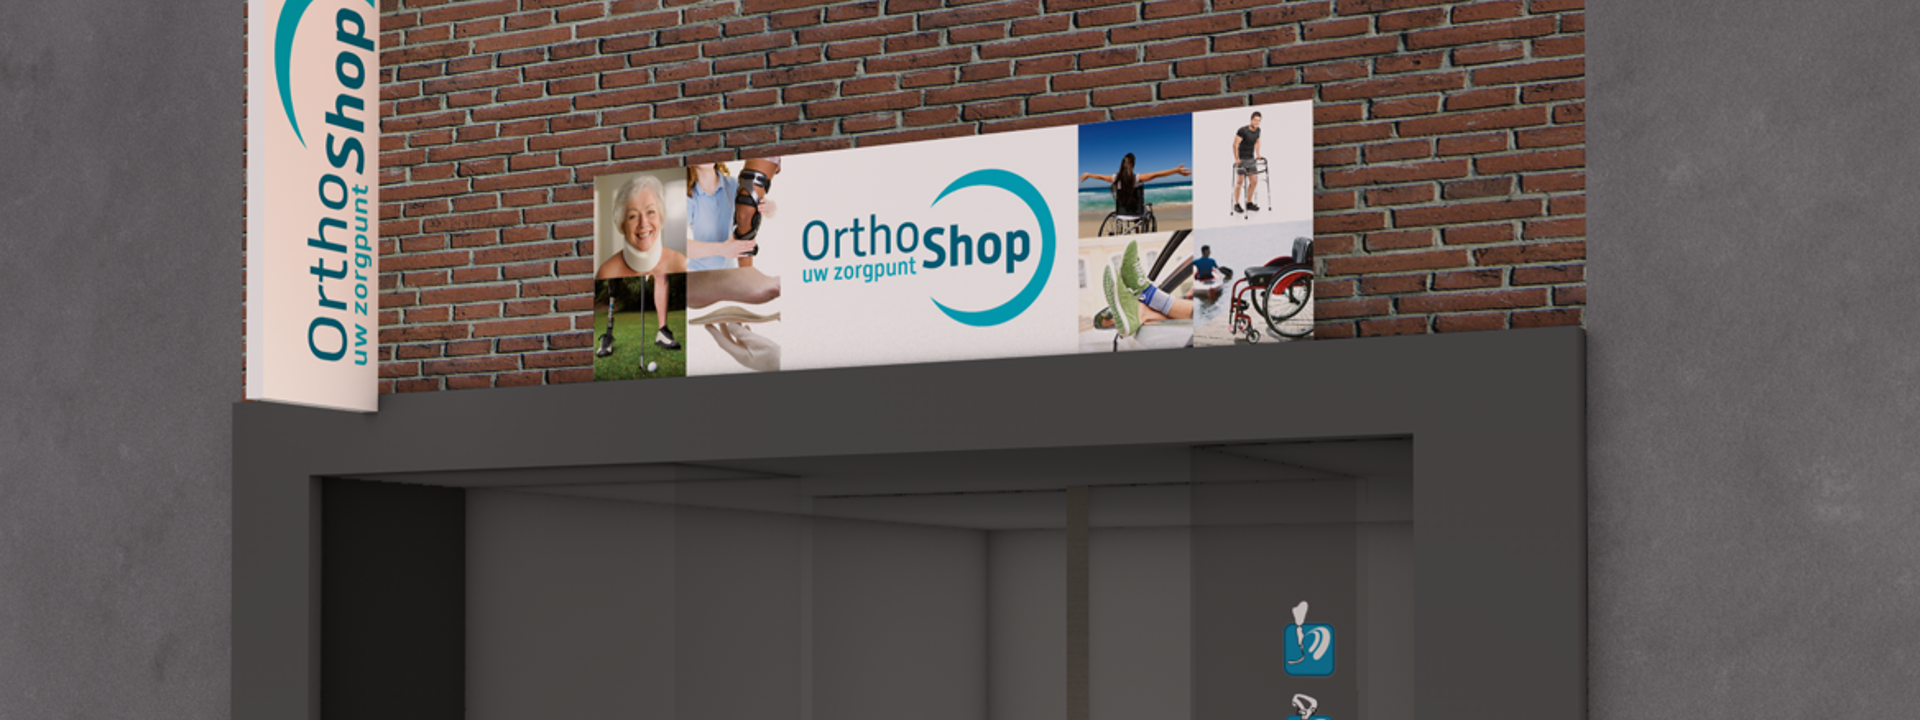 OrthoShop thuiszorgapotheek